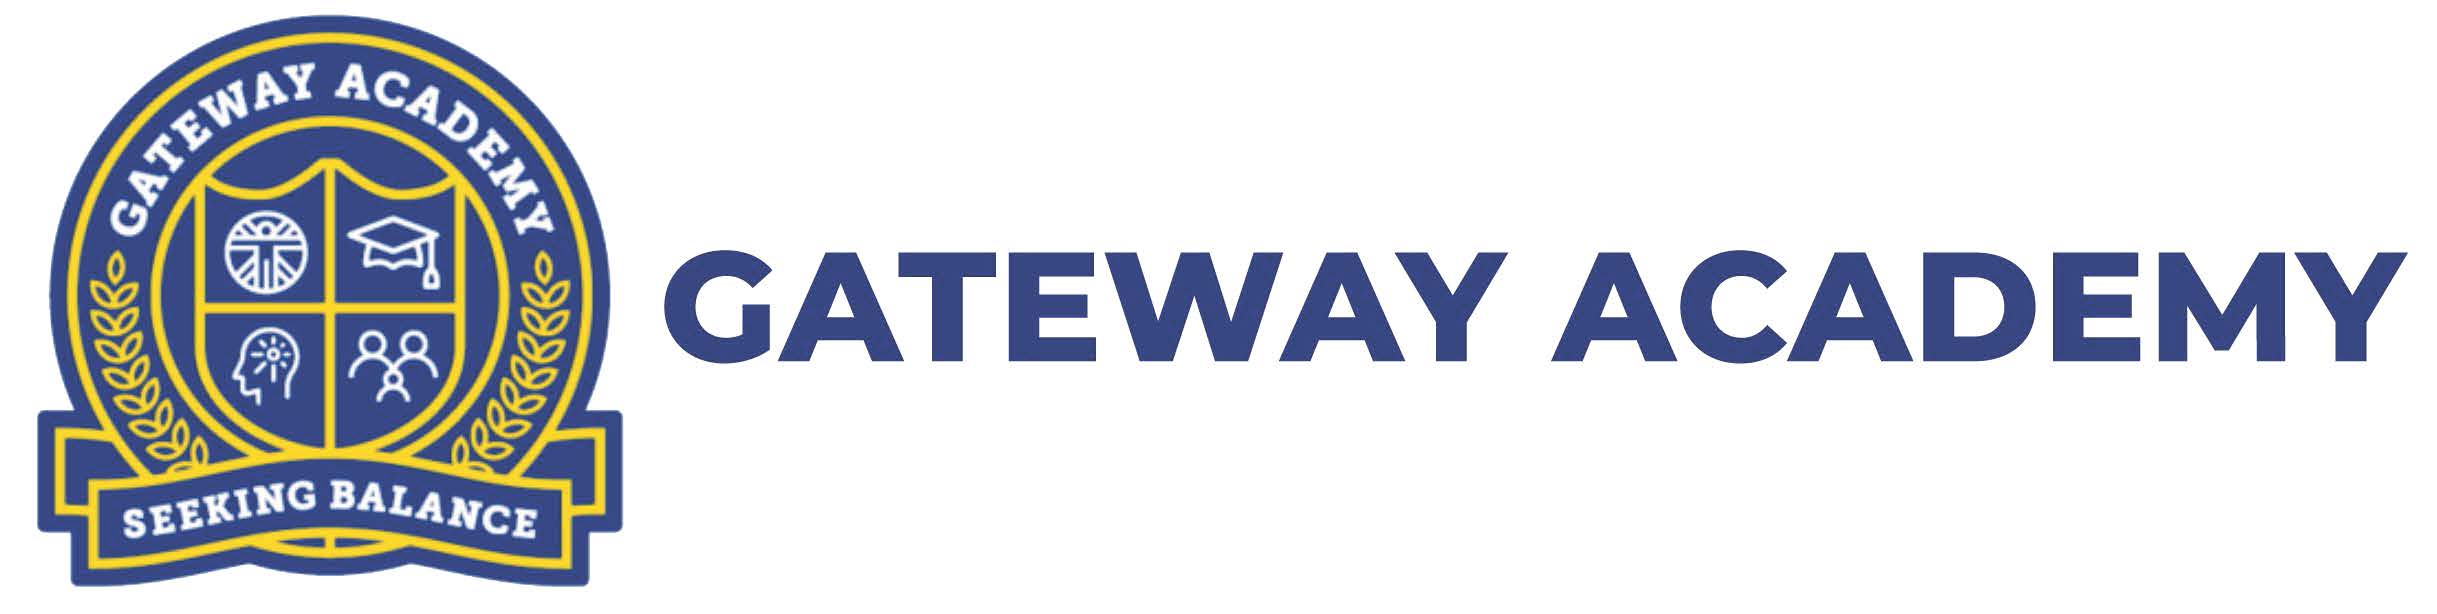 gateway_academy_logo_alt.jpg